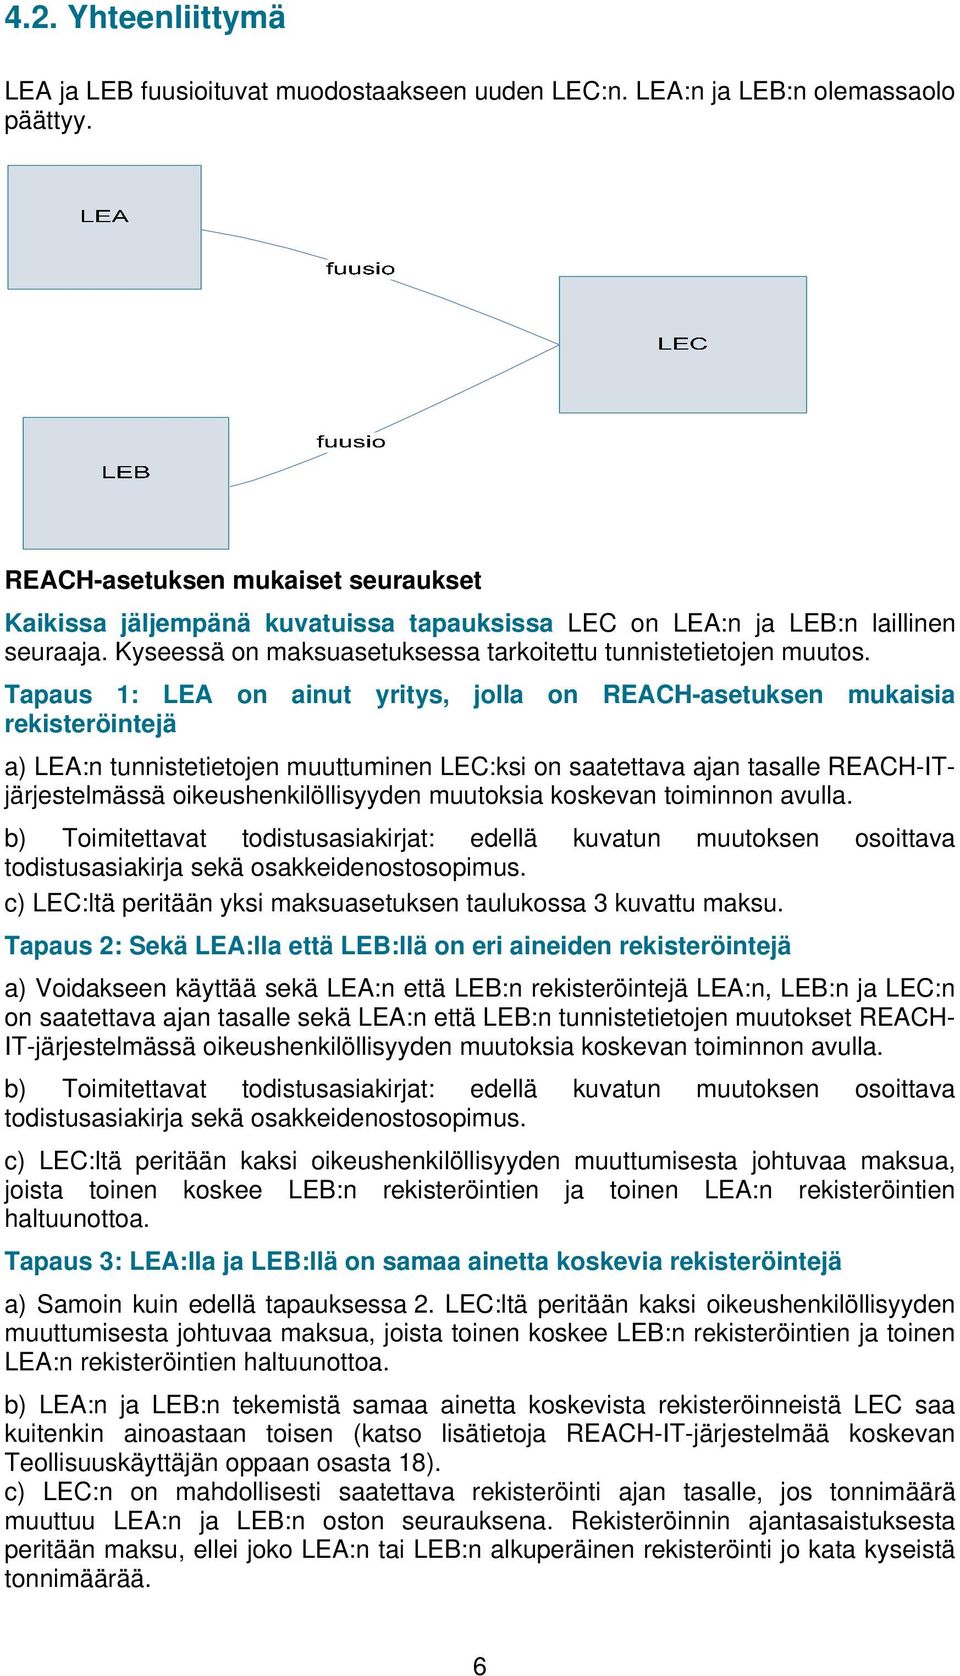 Tapaus 1: LEA on ainut yritys, jolla on REACH-asetuksen mukaisia rekisteröintejä a) LEA:n tunnistetietojen muuttuminen LEC:ksi on saatettava ajan tasalle REACH-ITjärjestelmässä oikeushenkilöllisyyden